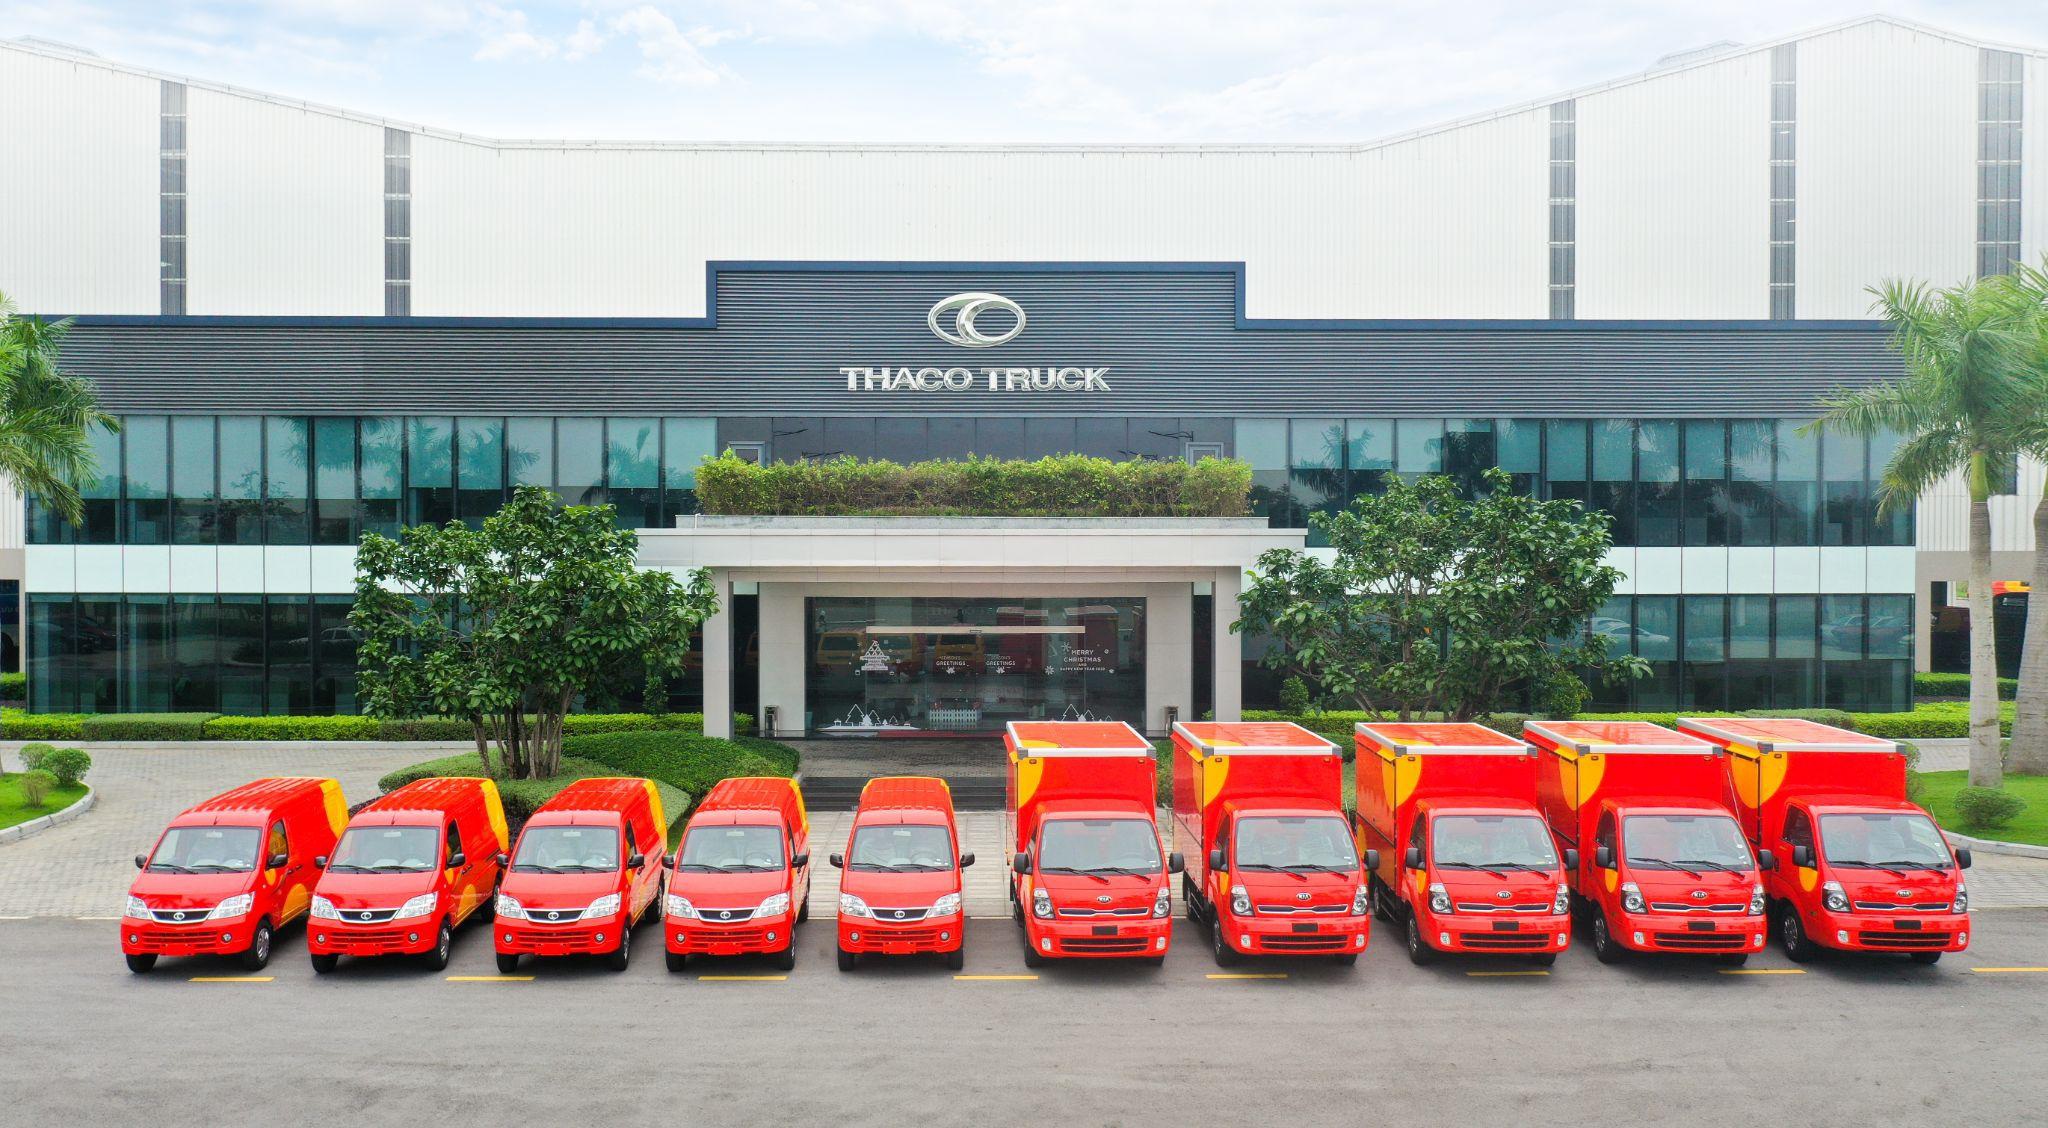 Thaco Auto bàn giao lô 170 xe cho Công ty Pinnow Việt Nam